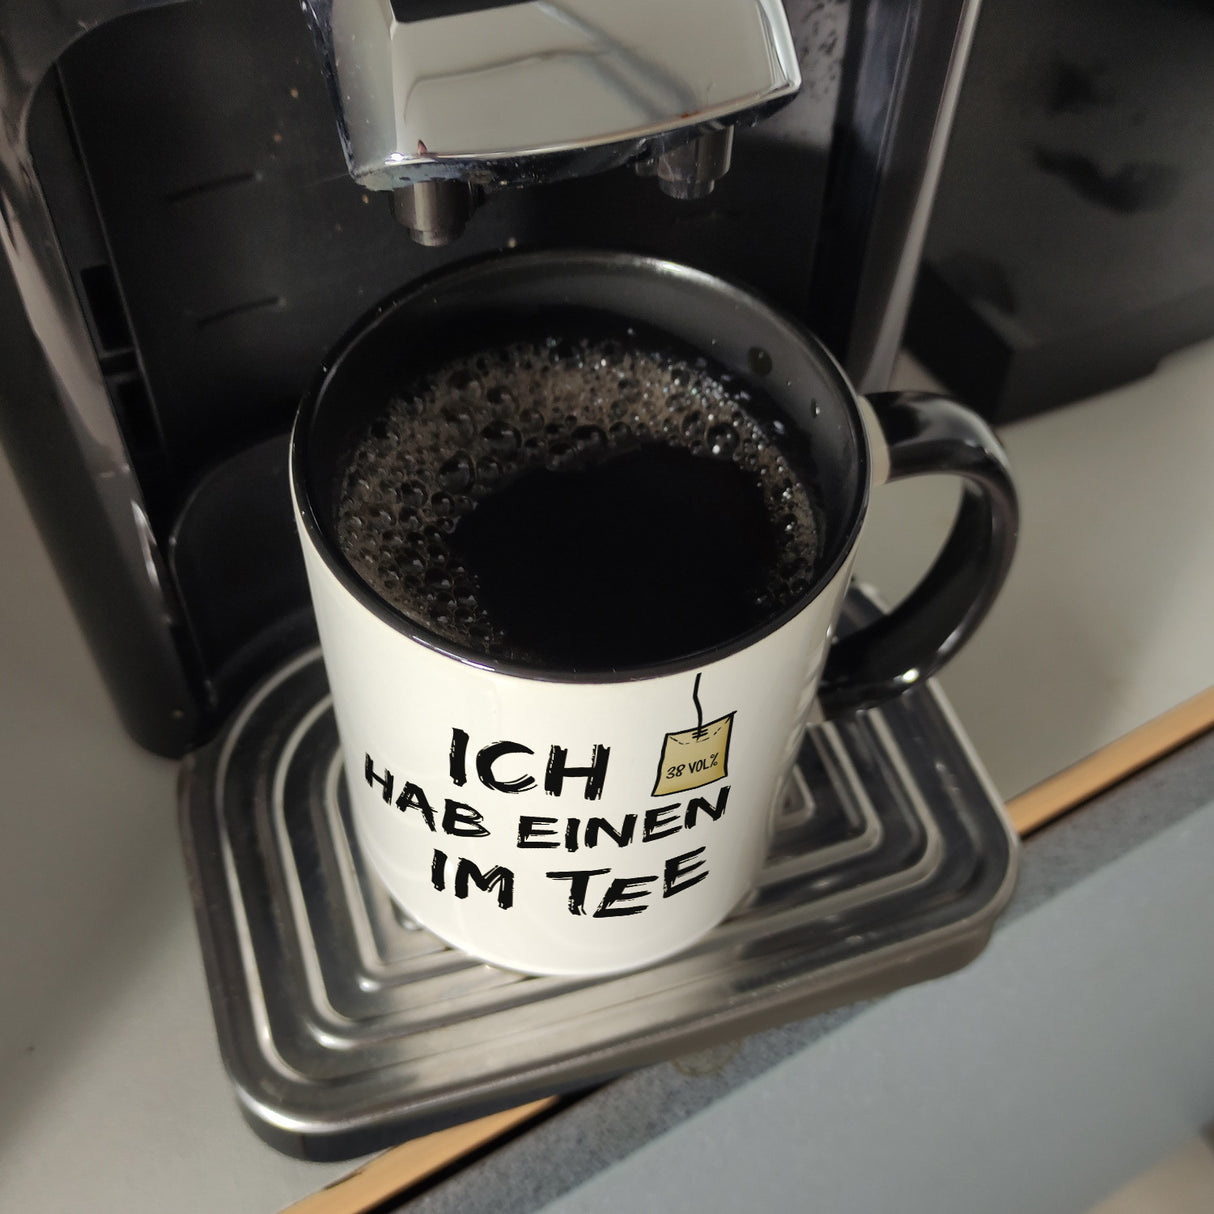 Kaffeebecher mit Spruch: Ich hab einen im Tee